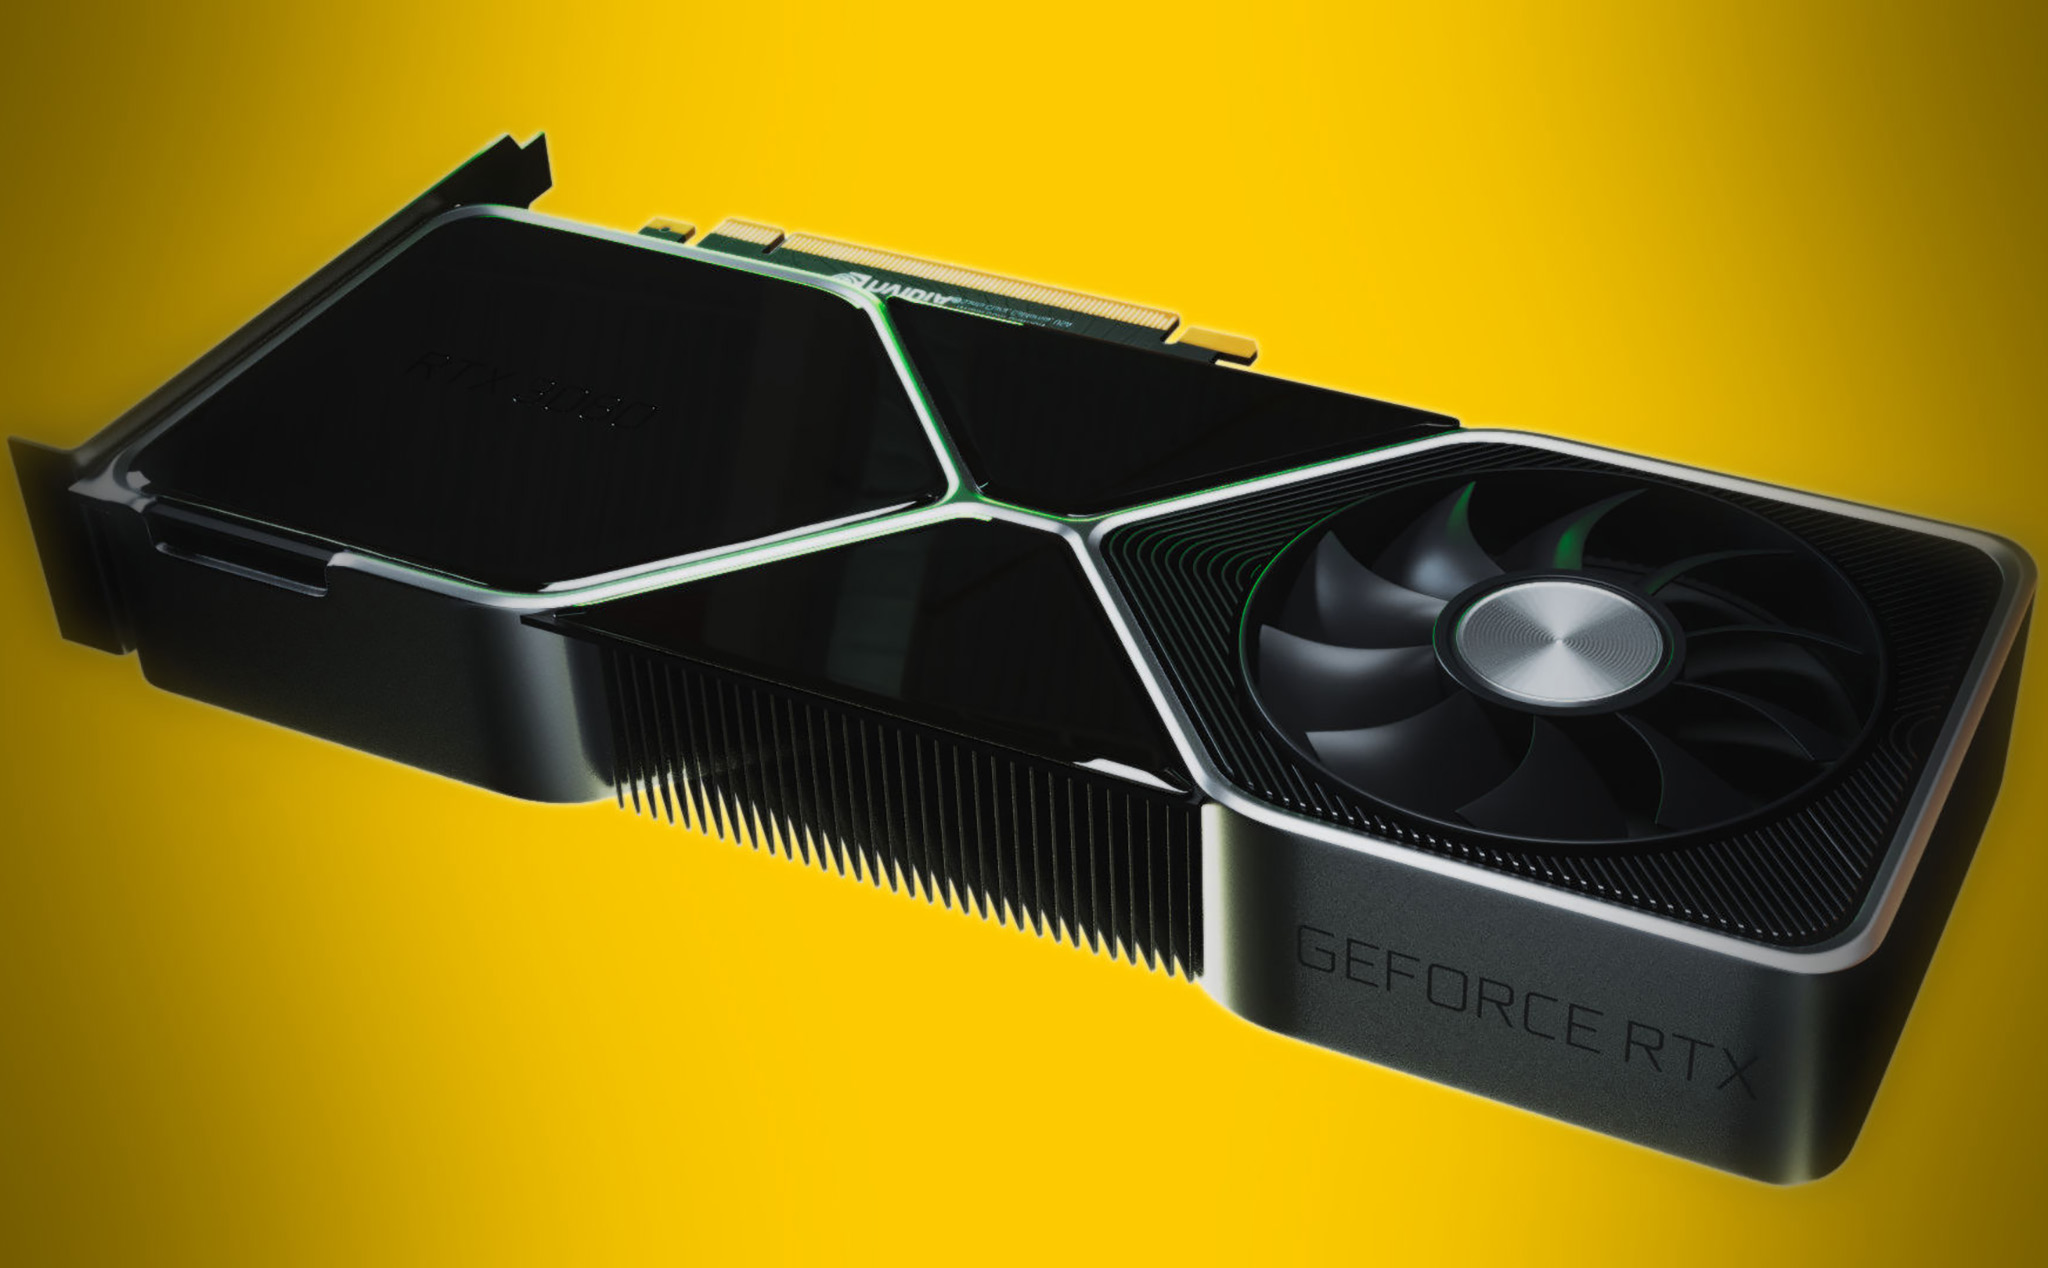 Tại sao card GeForce RTX 30 series của Nvidia lại có thiết kế "quái dị" như vậy?